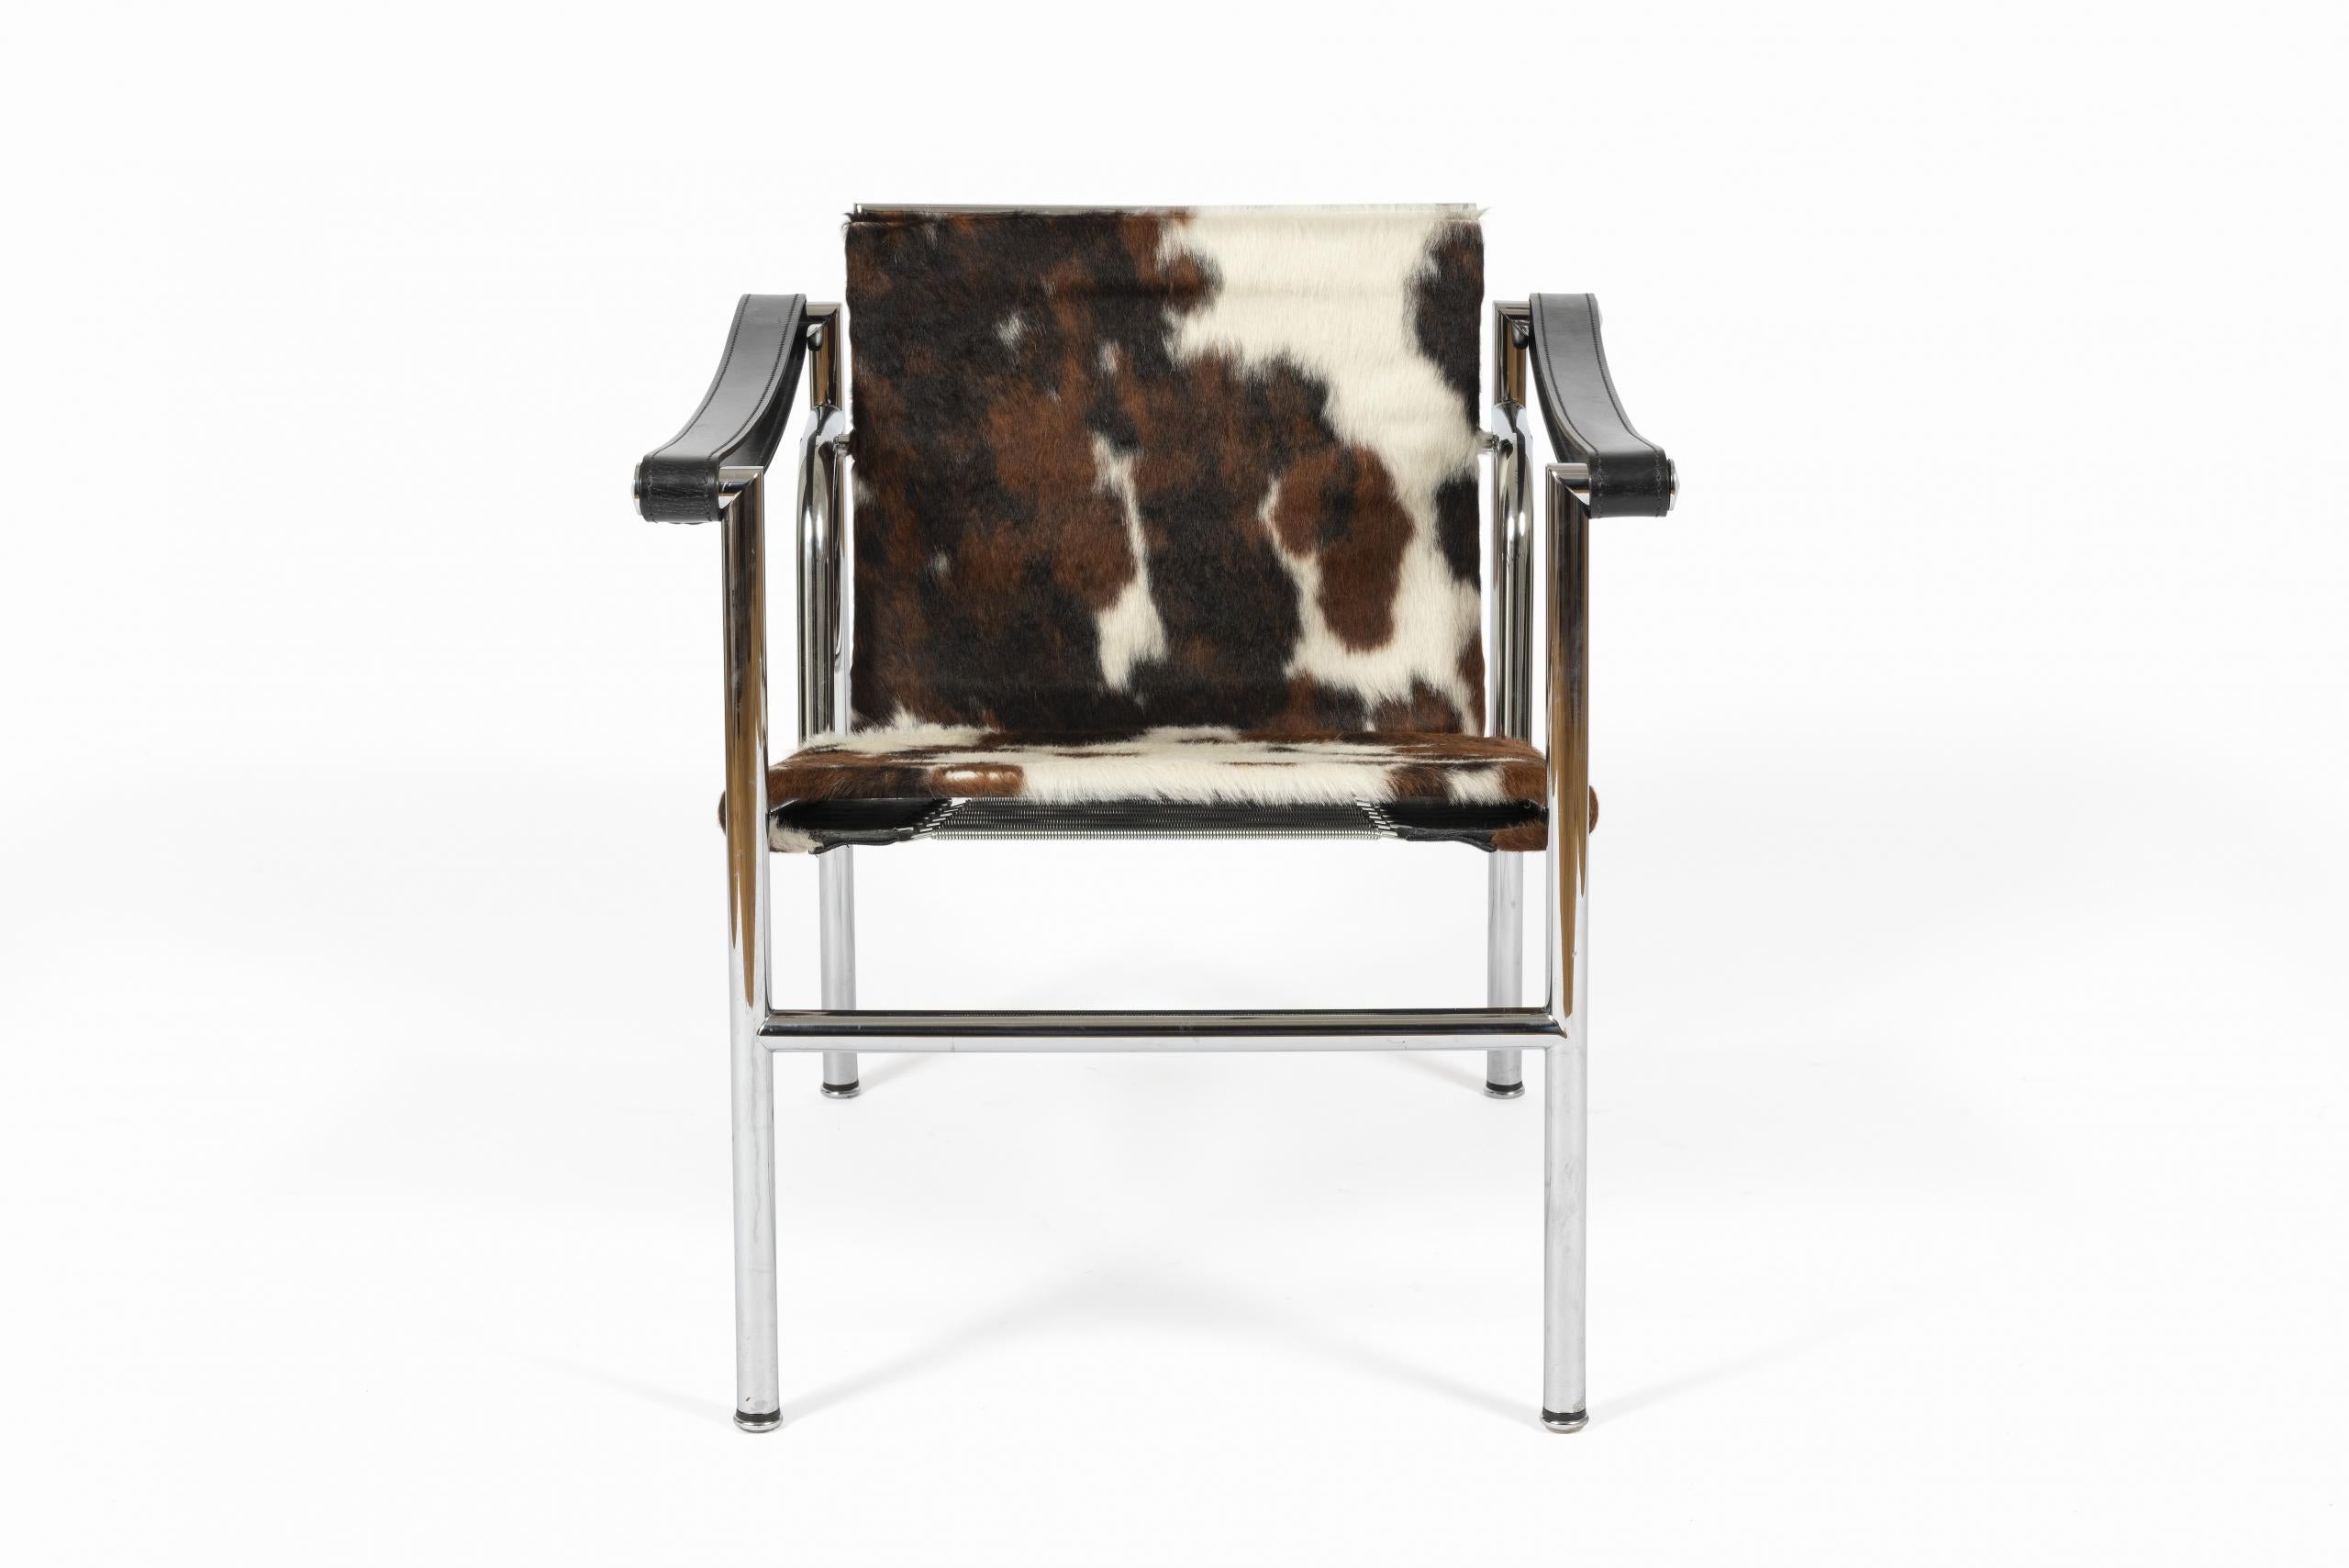 Premières chaises LC1 numérotées, conçues par Le Corbusier & Pierre Jeanneret en 1928 et fabriquées par Cassina à partir des années 1960.

Numéro d’identification 56048, Édition Cassina d’origine certifiée.

Revêtement en cuir, cuir poilu, cuir